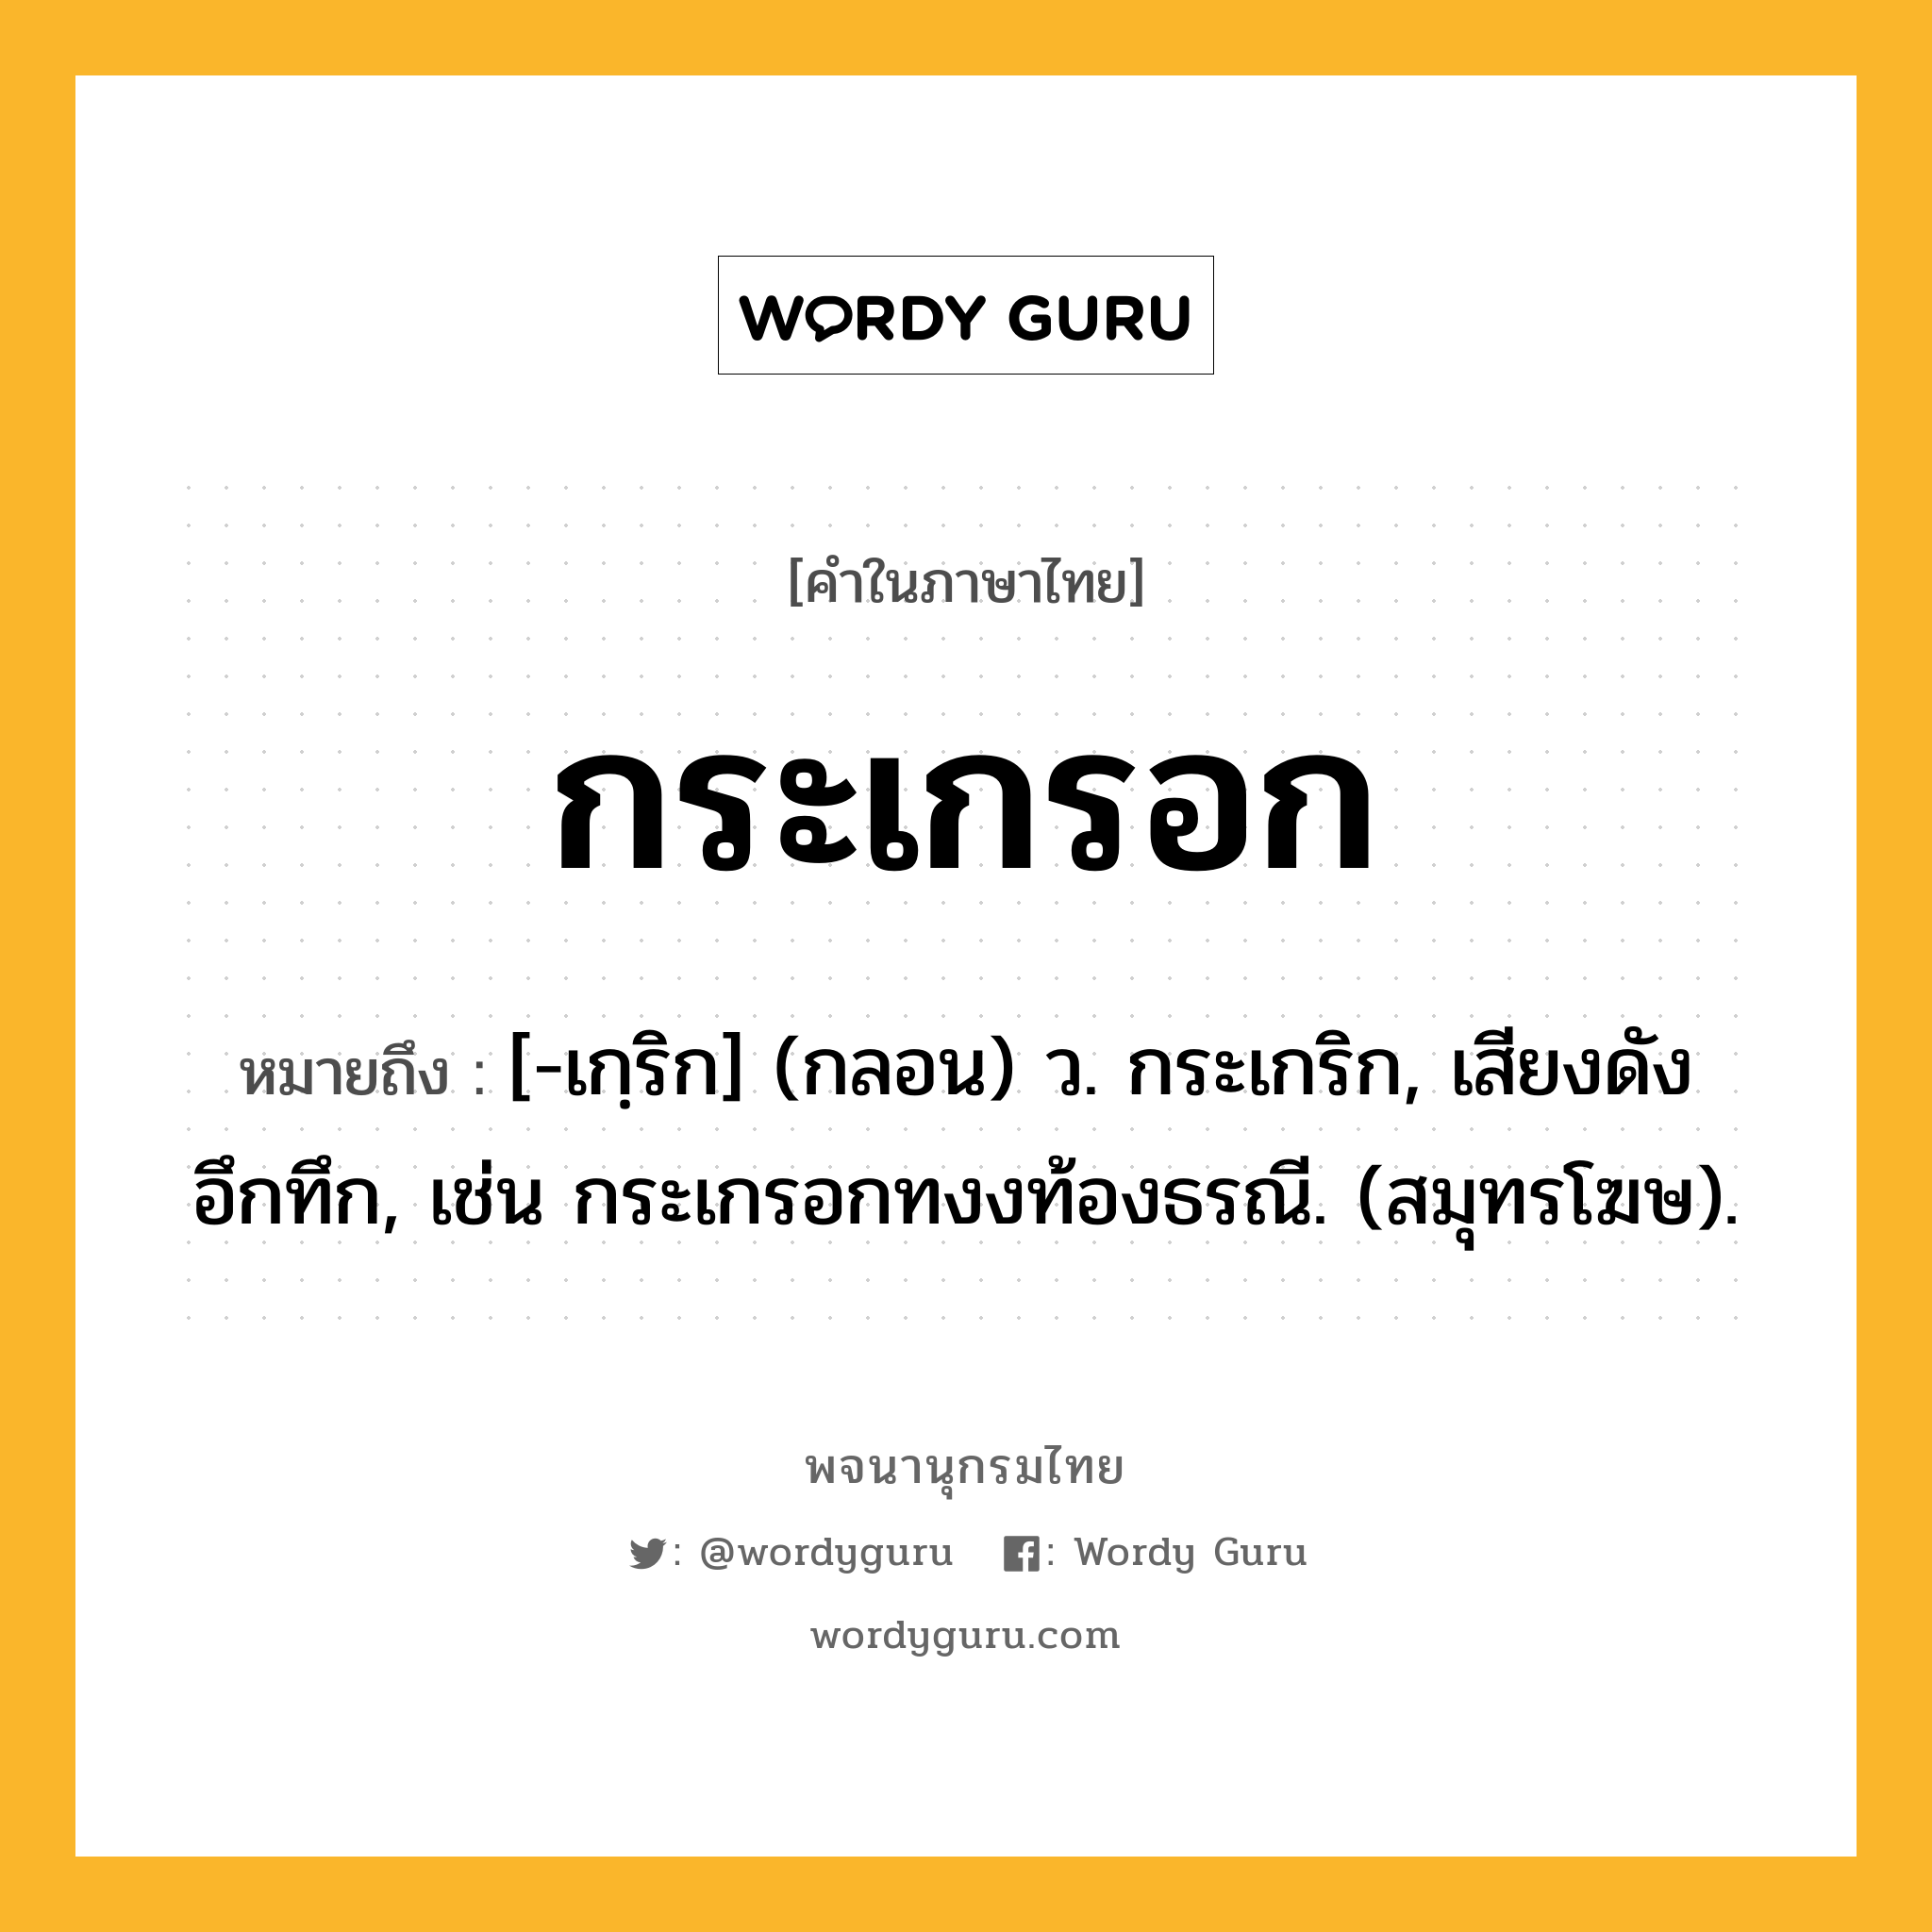 กระเกรอก หมายถึงอะไร?, คำในภาษาไทย กระเกรอก หมายถึง [-เกฺริก] (กลอน) ว. กระเกริก, เสียงดังอึกทึก, เช่น กระเกรอกทงงท้องธรณี. (สมุทรโฆษ).